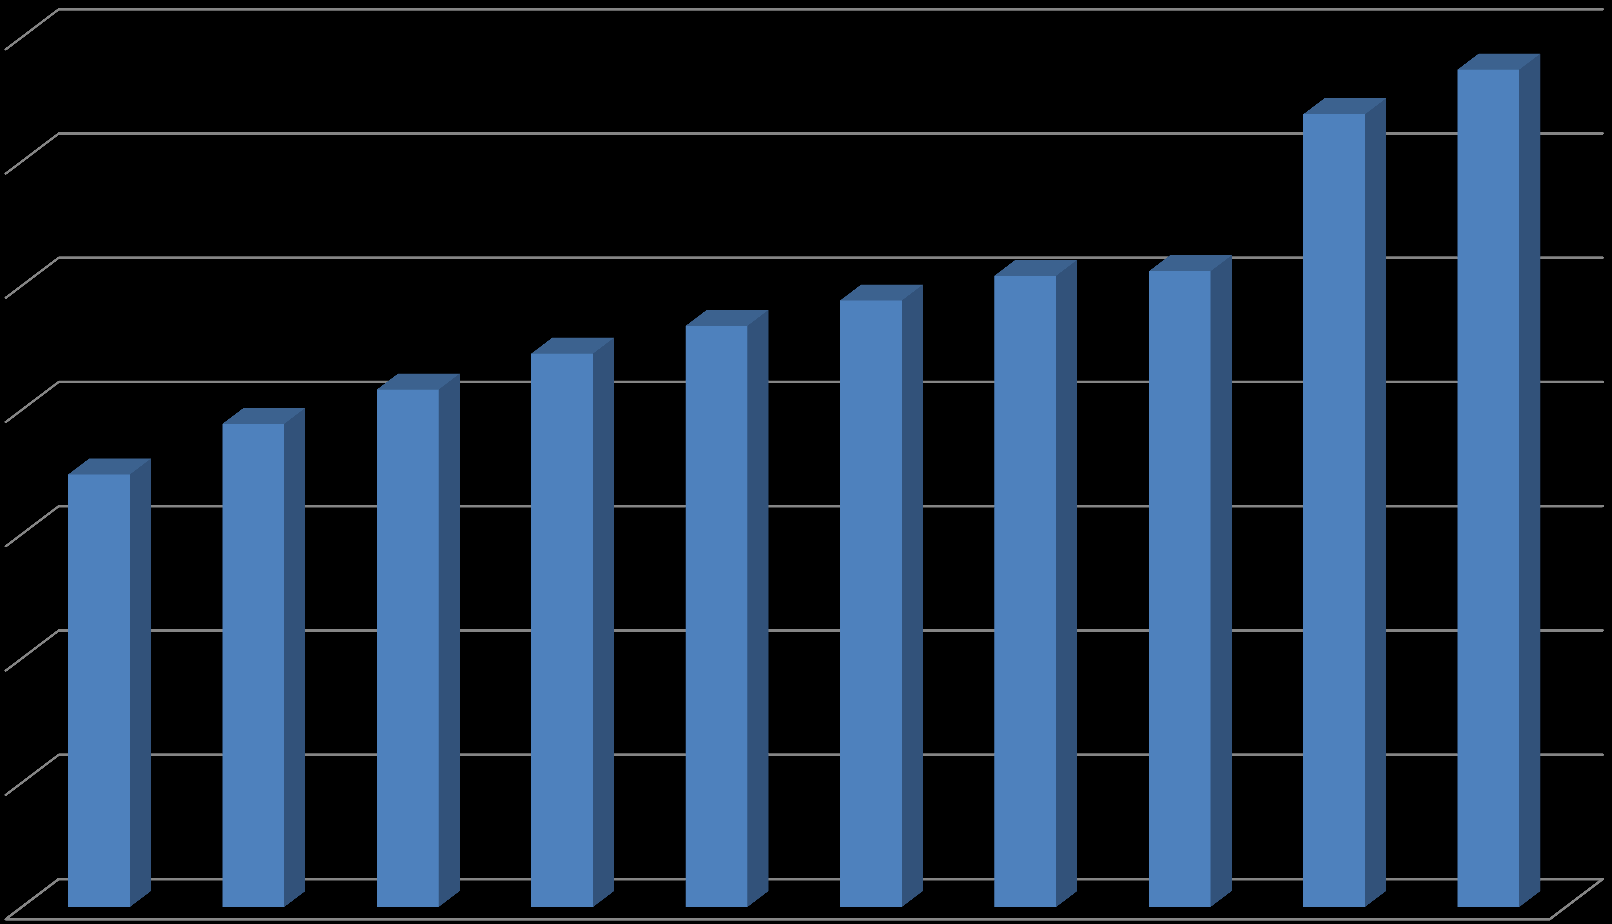 Evolução do Número de Matrículas em Cursos de Graduação - presencial e a distância (Brasil 2001-2011) 6.739.689 6.379.